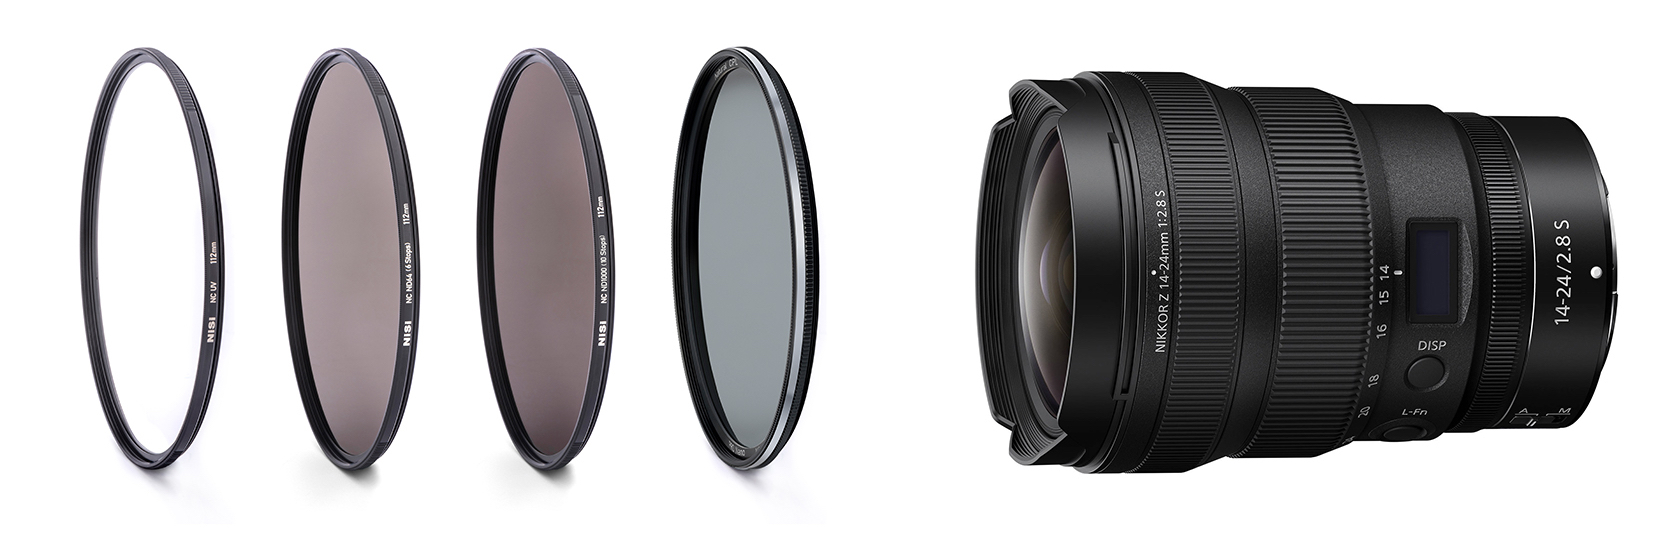 Nikon Z 14-24mm f/2.8 S に対応したフィルタースレッド112mmの円形 